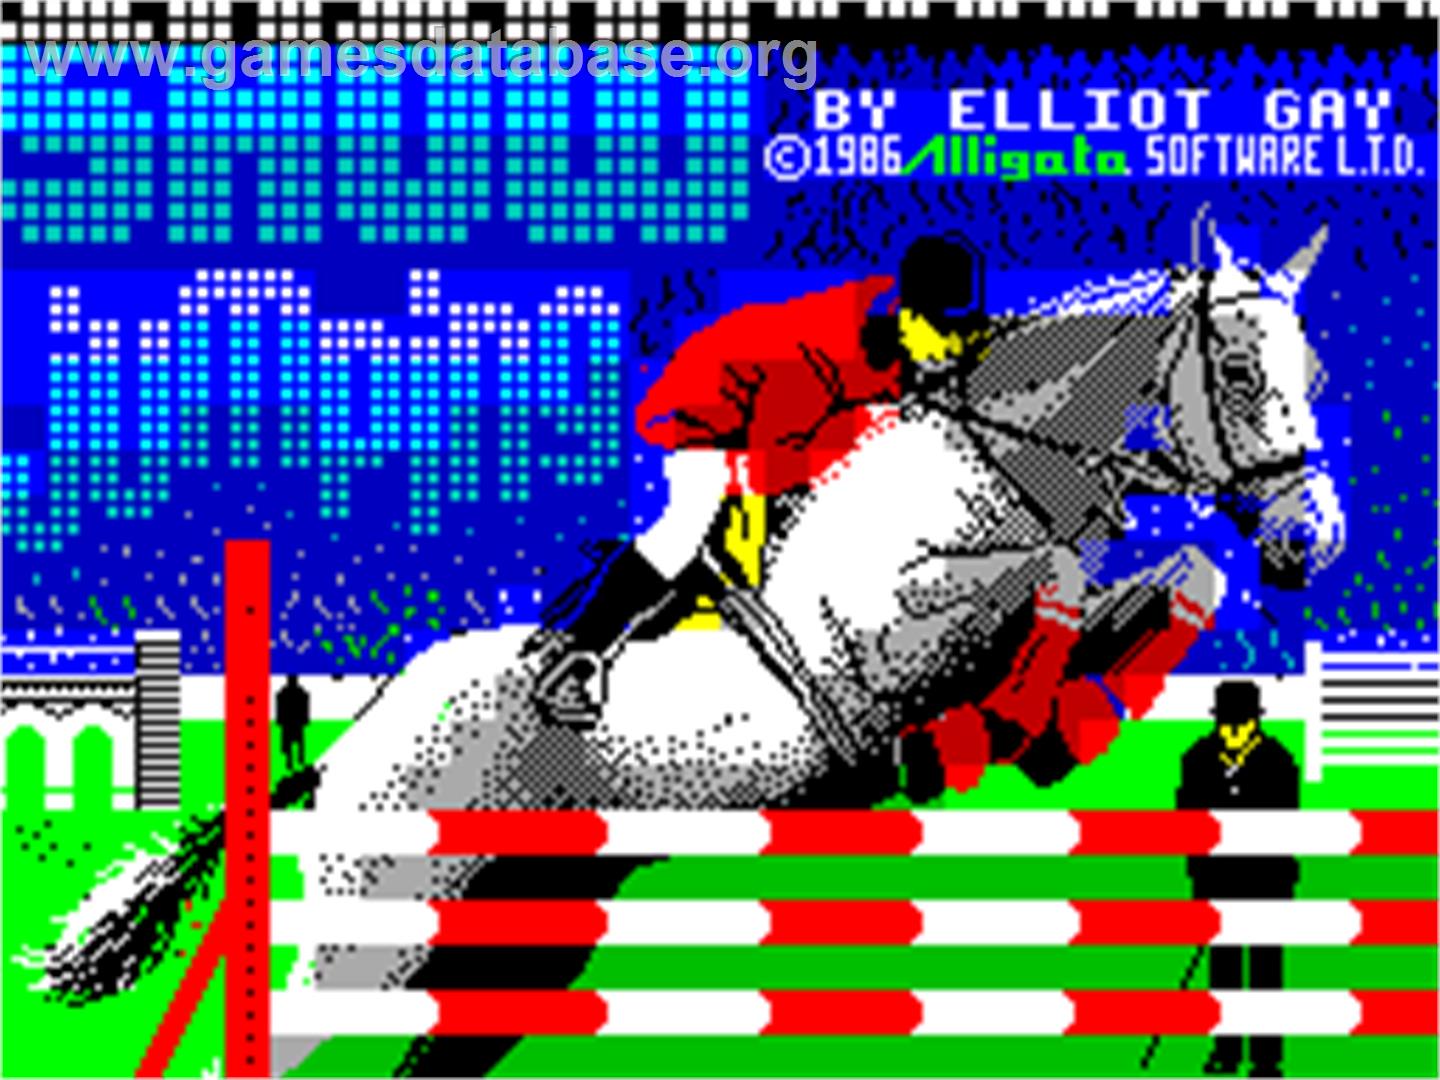 Show Jumping - Sinclair ZX Spectrum - Artwork - Title Screen